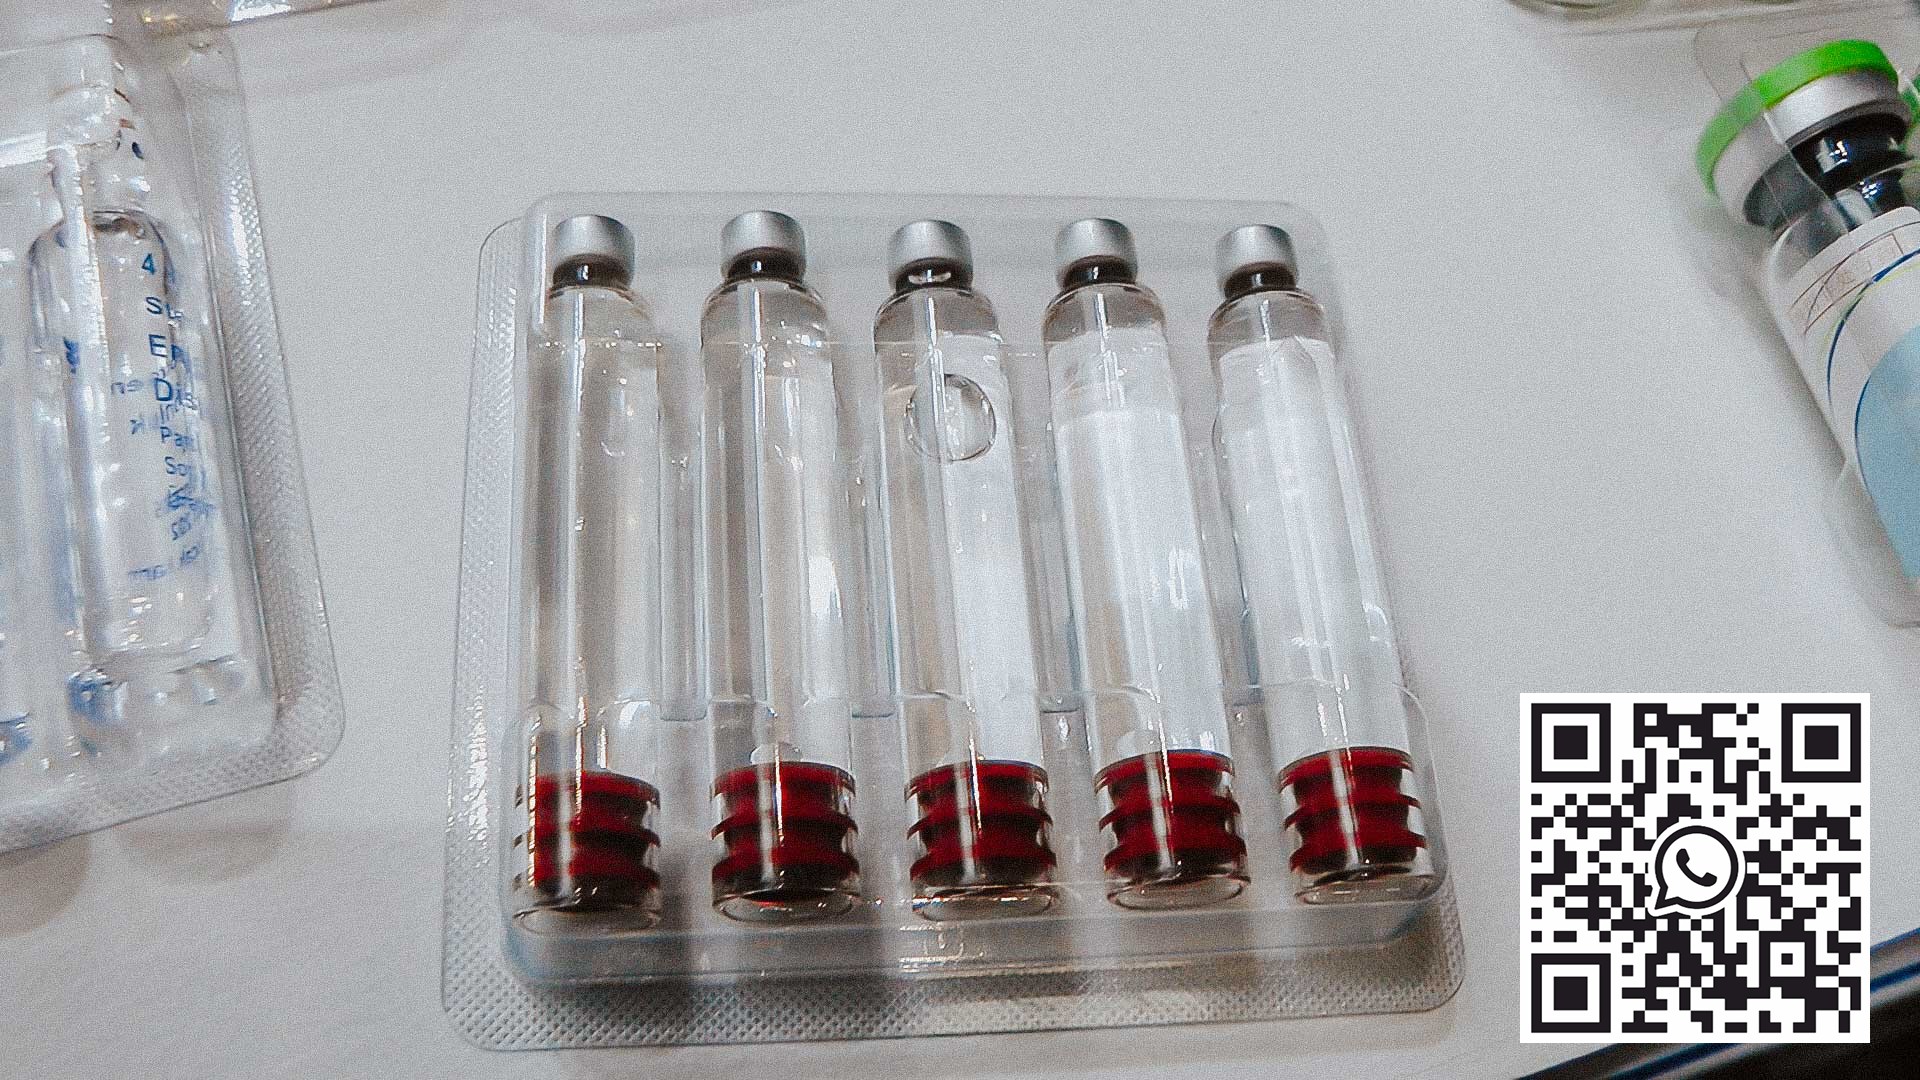 Utstyr for pakking av glassampuller og penicillinflasker i PVC og aluminiumsblister